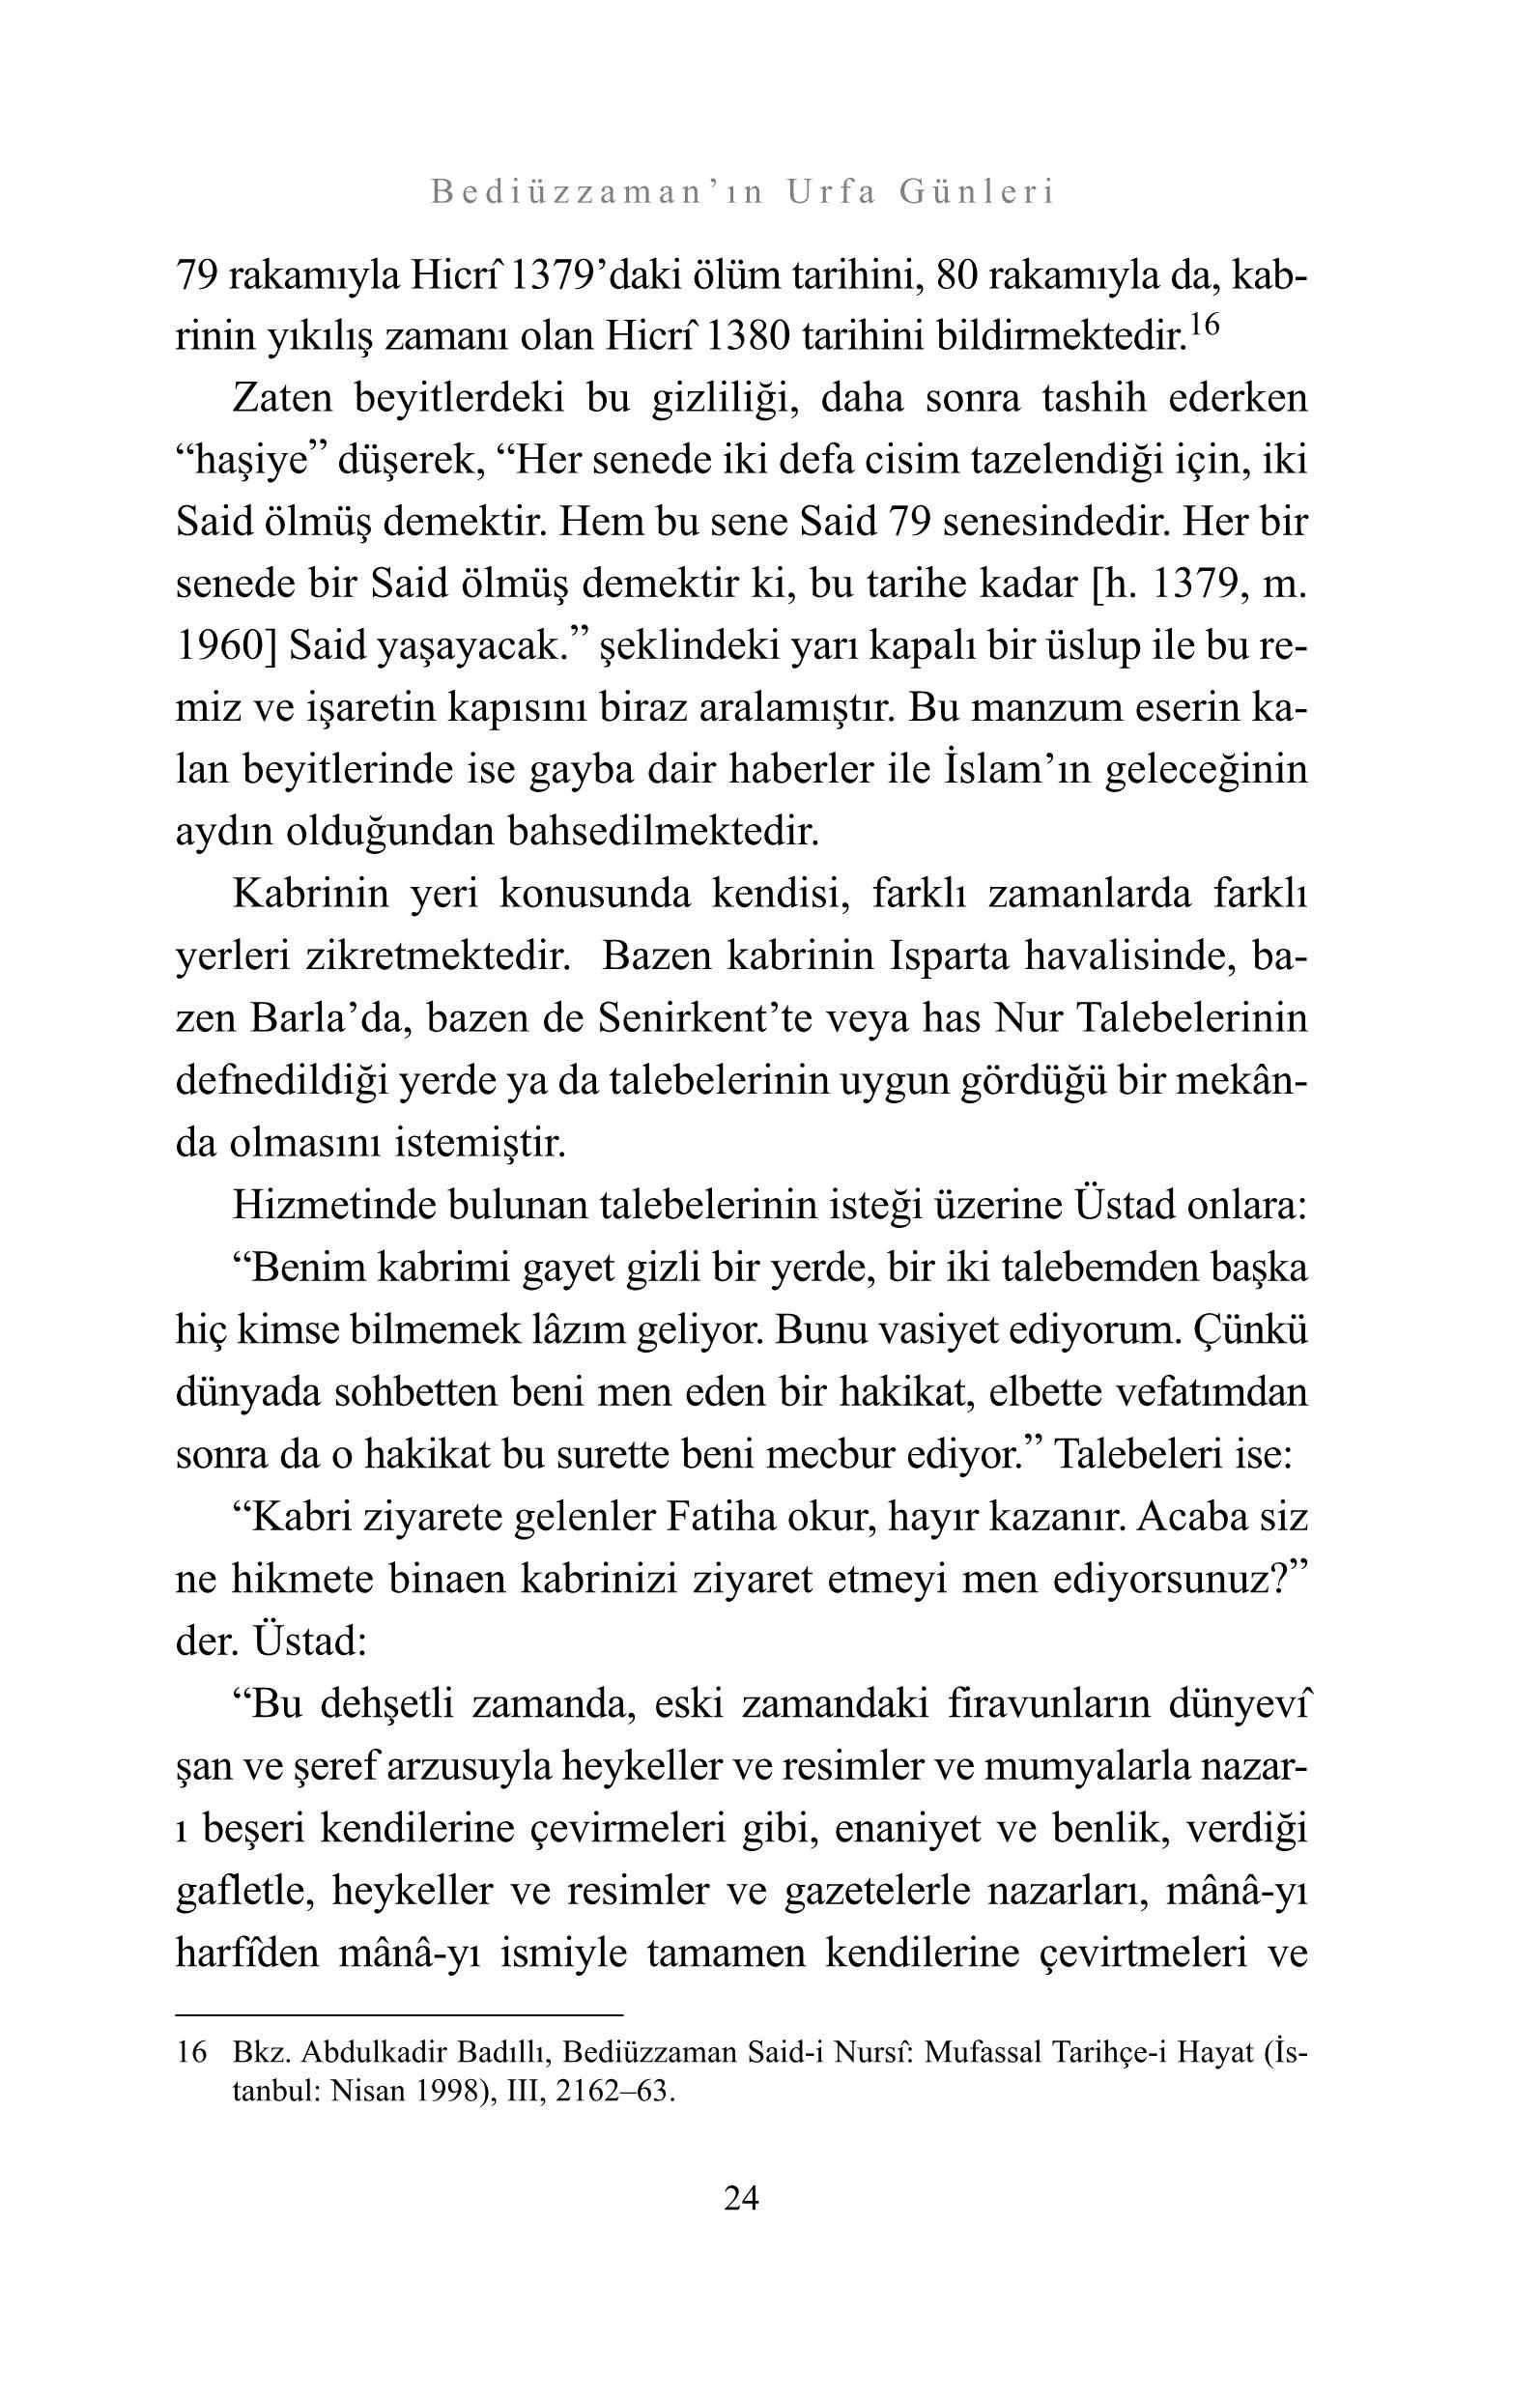 Ismail Serifoglu - Bediüzzamanın Urfa Günleri - SahdamarY.pdf, 129-Sayfa 